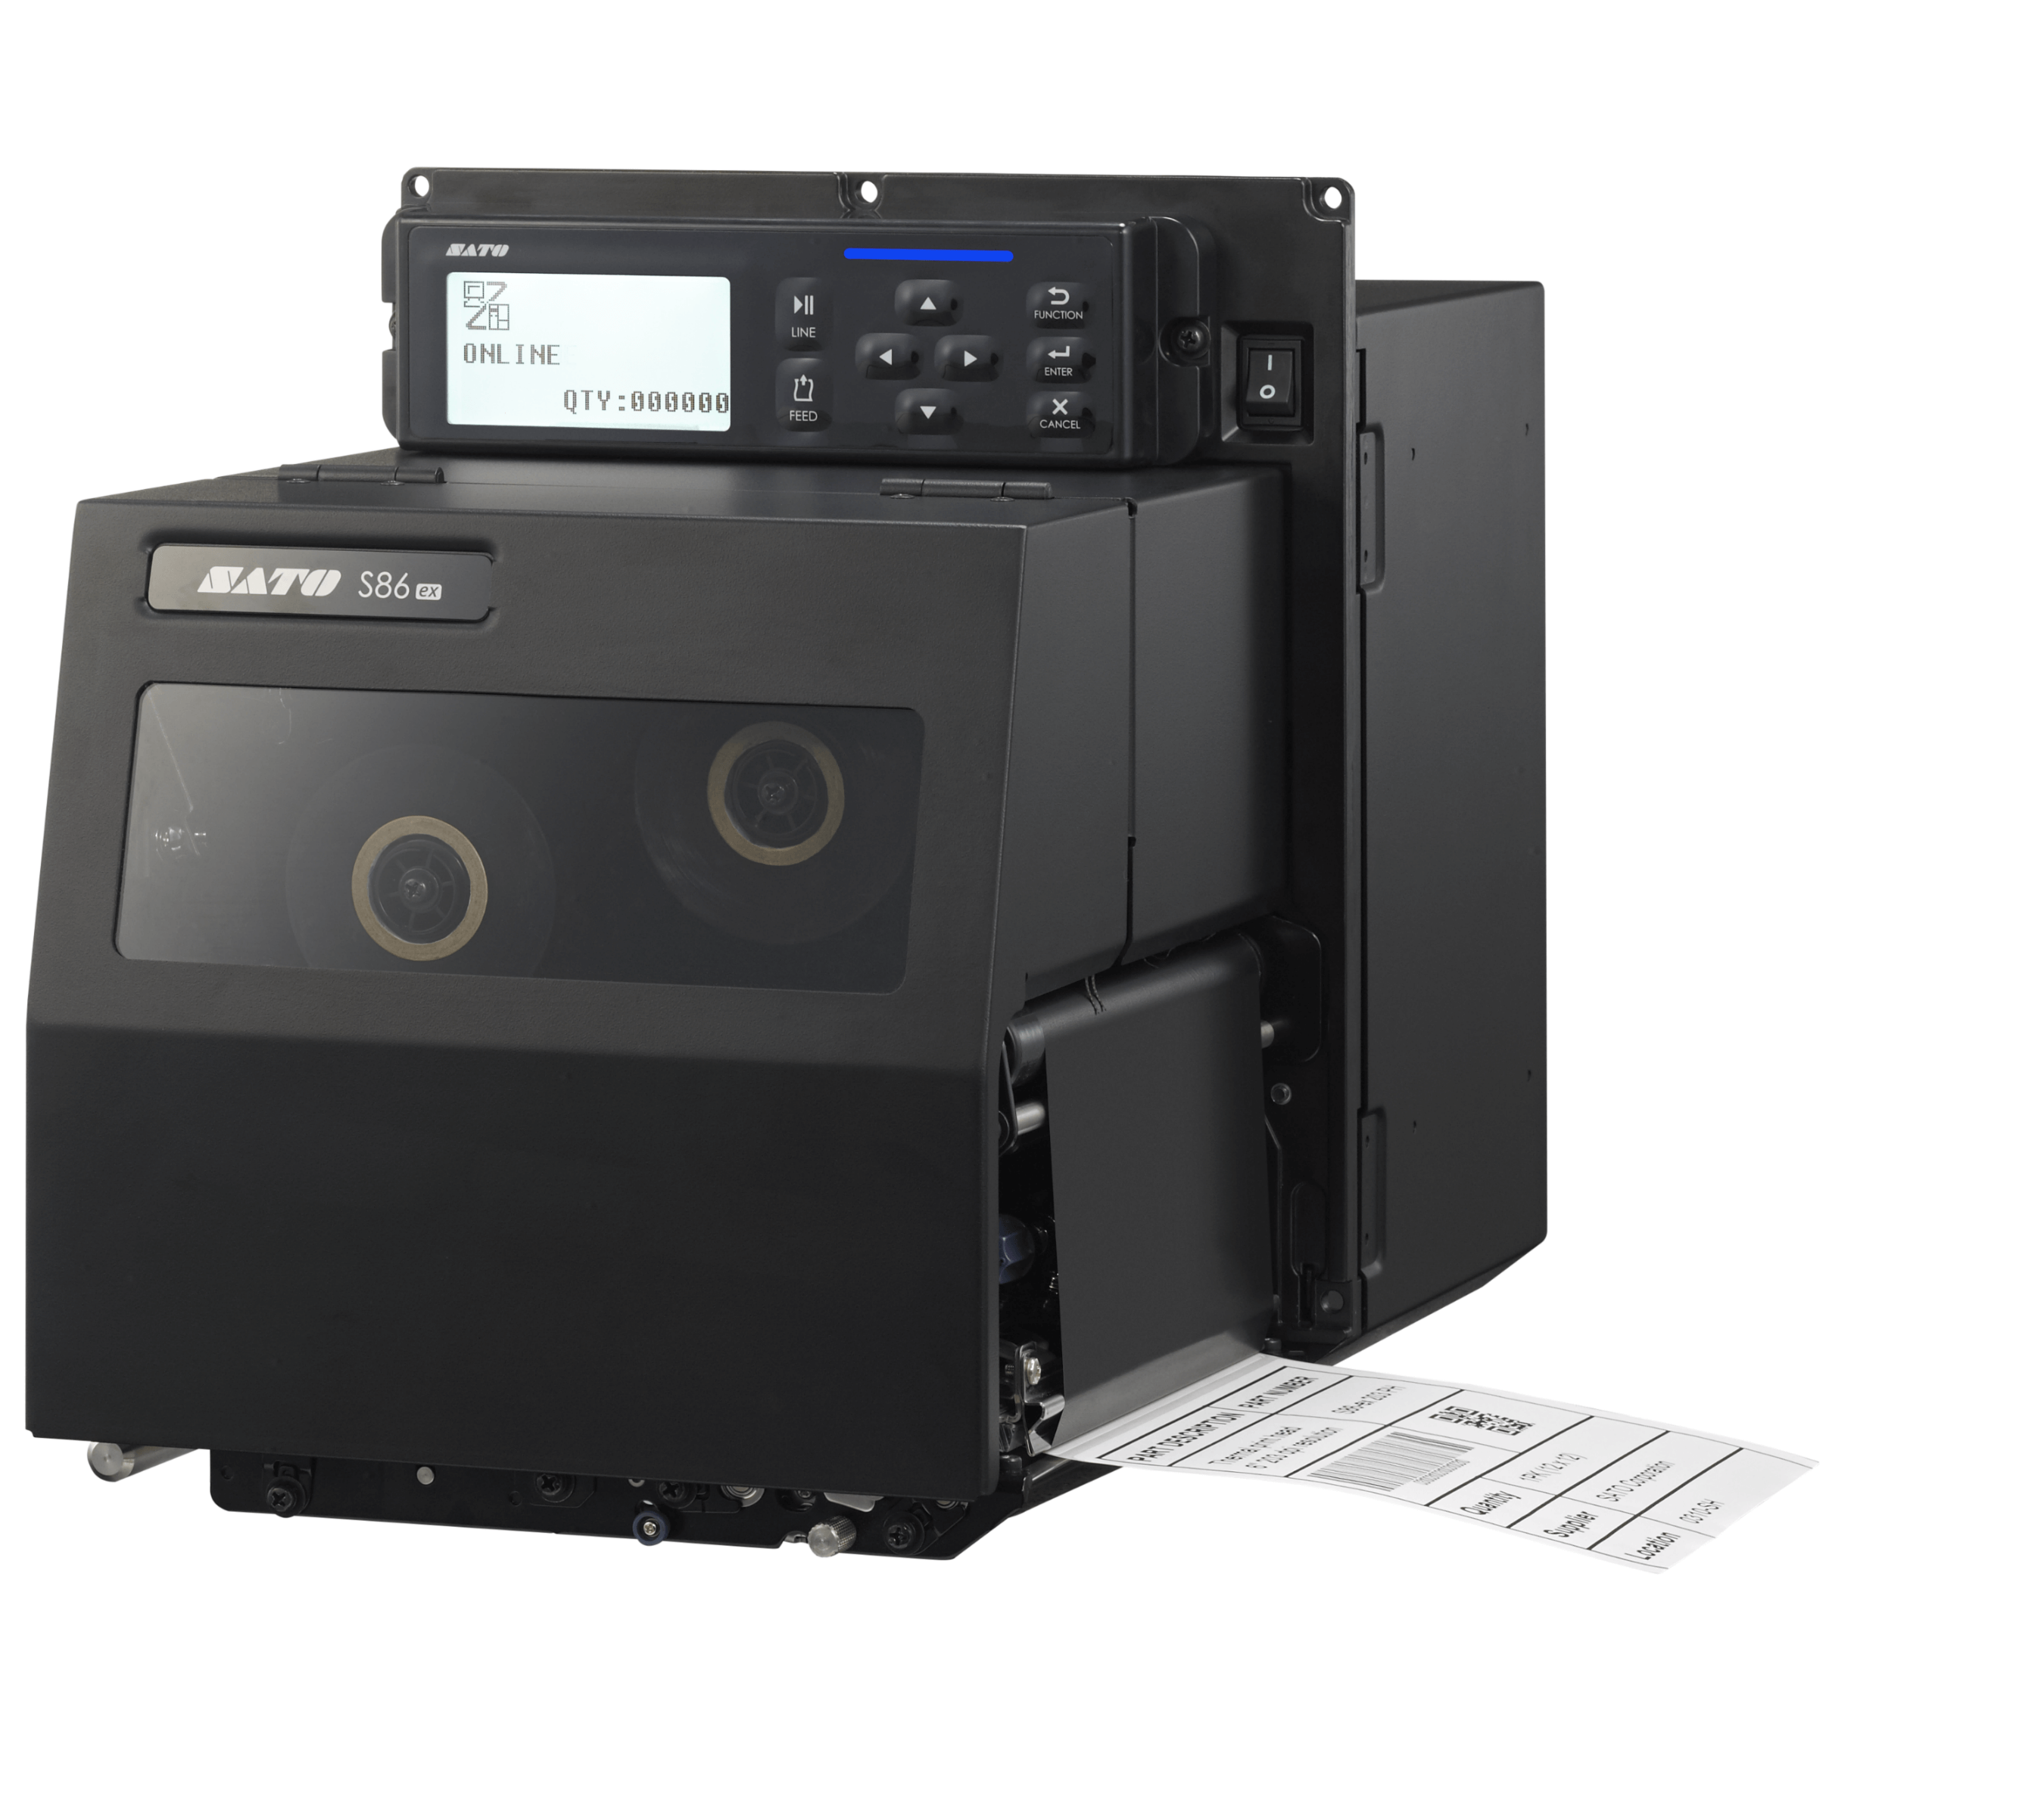 Motor de impresión Sato S86-ex WWS860800EU